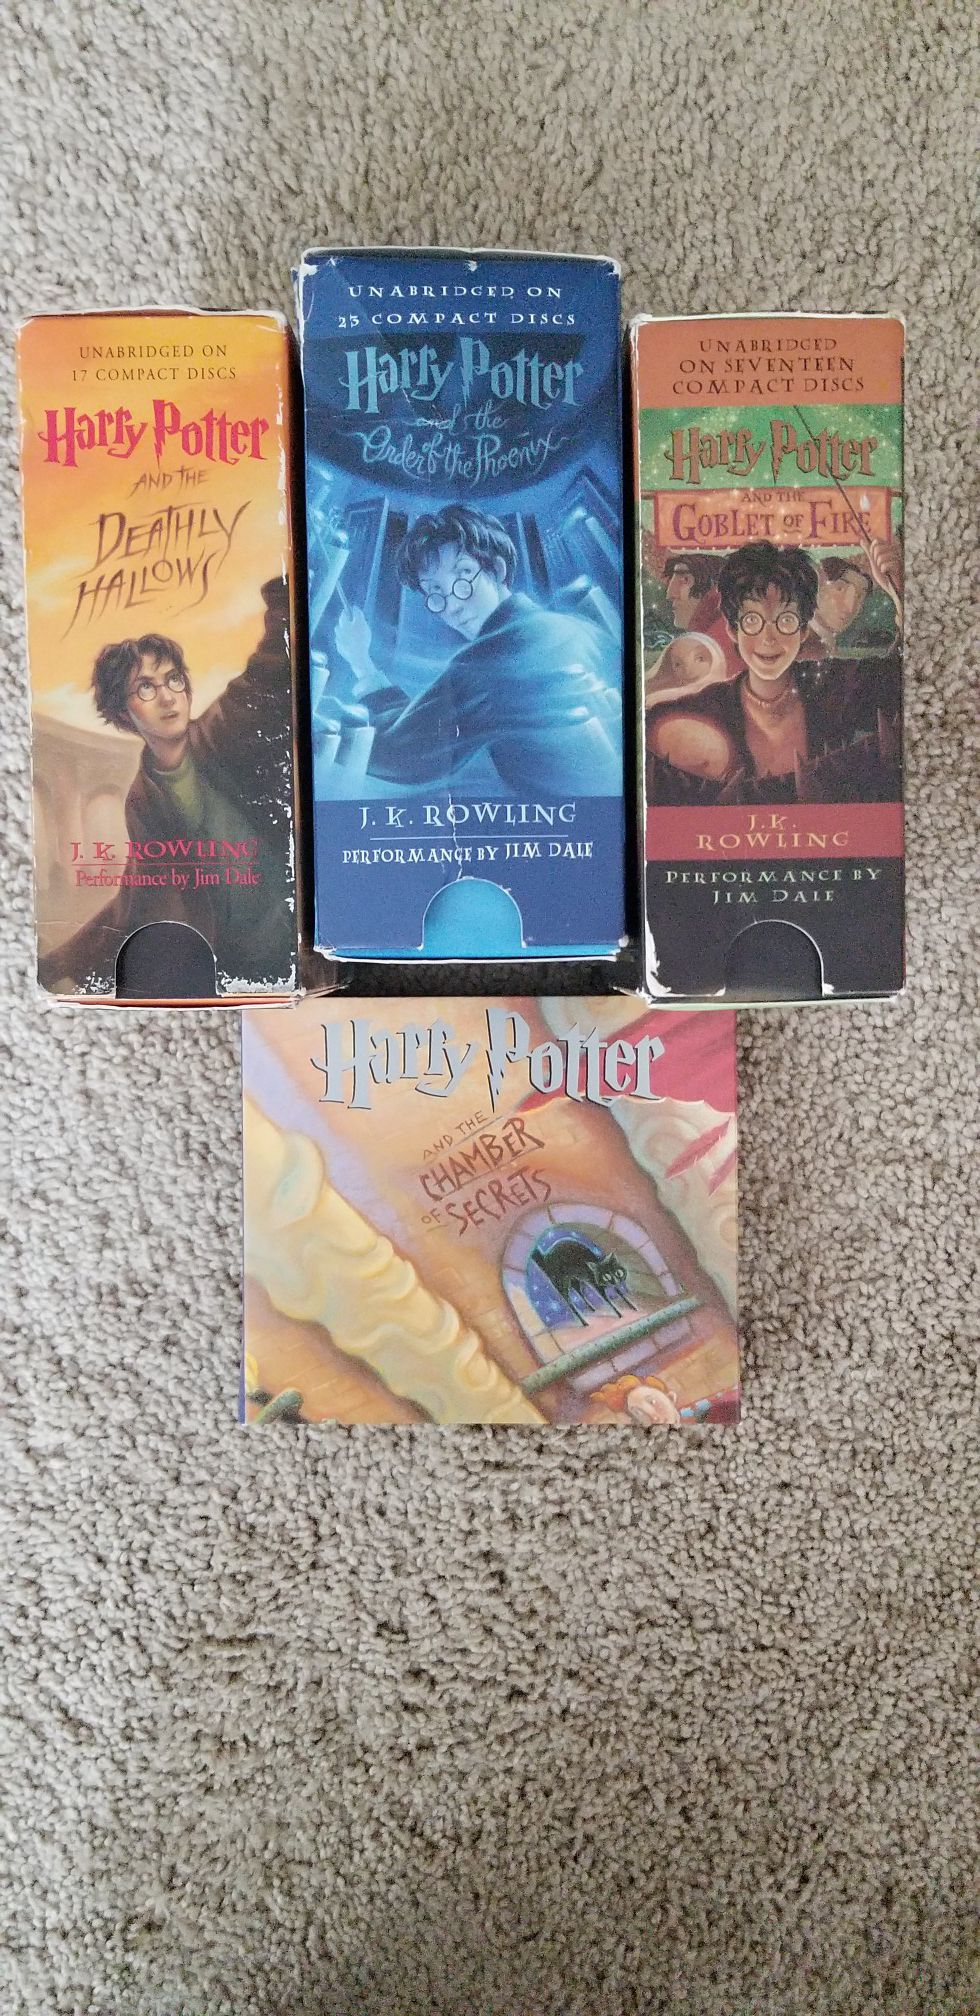 Harry Potter audiobooks on CD